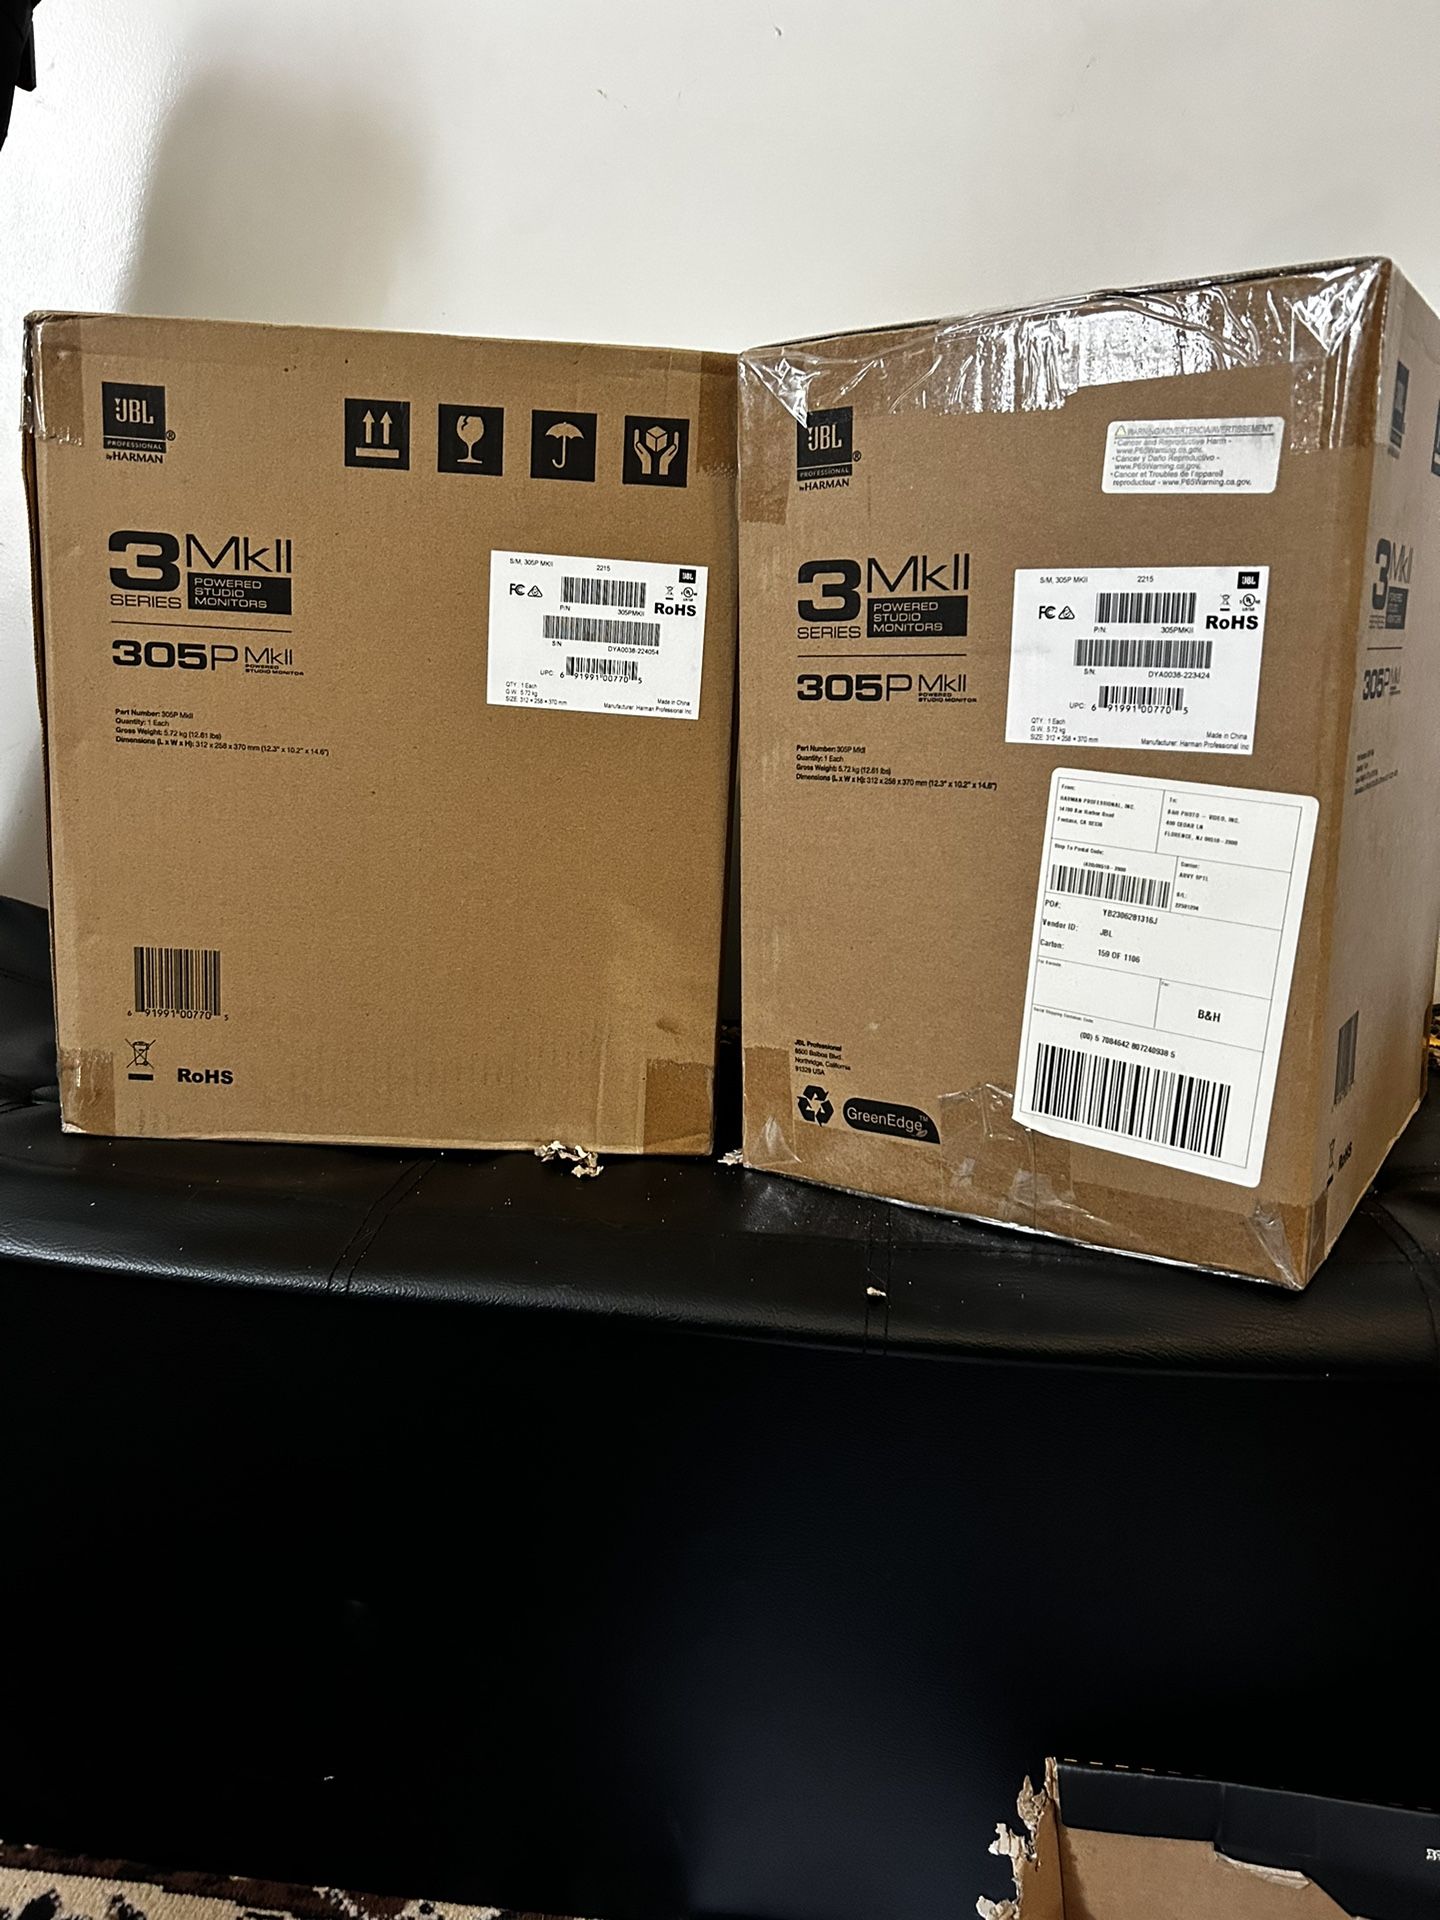 JBL MKII 3 Series Powered Studio Monitors (pair of speakers)